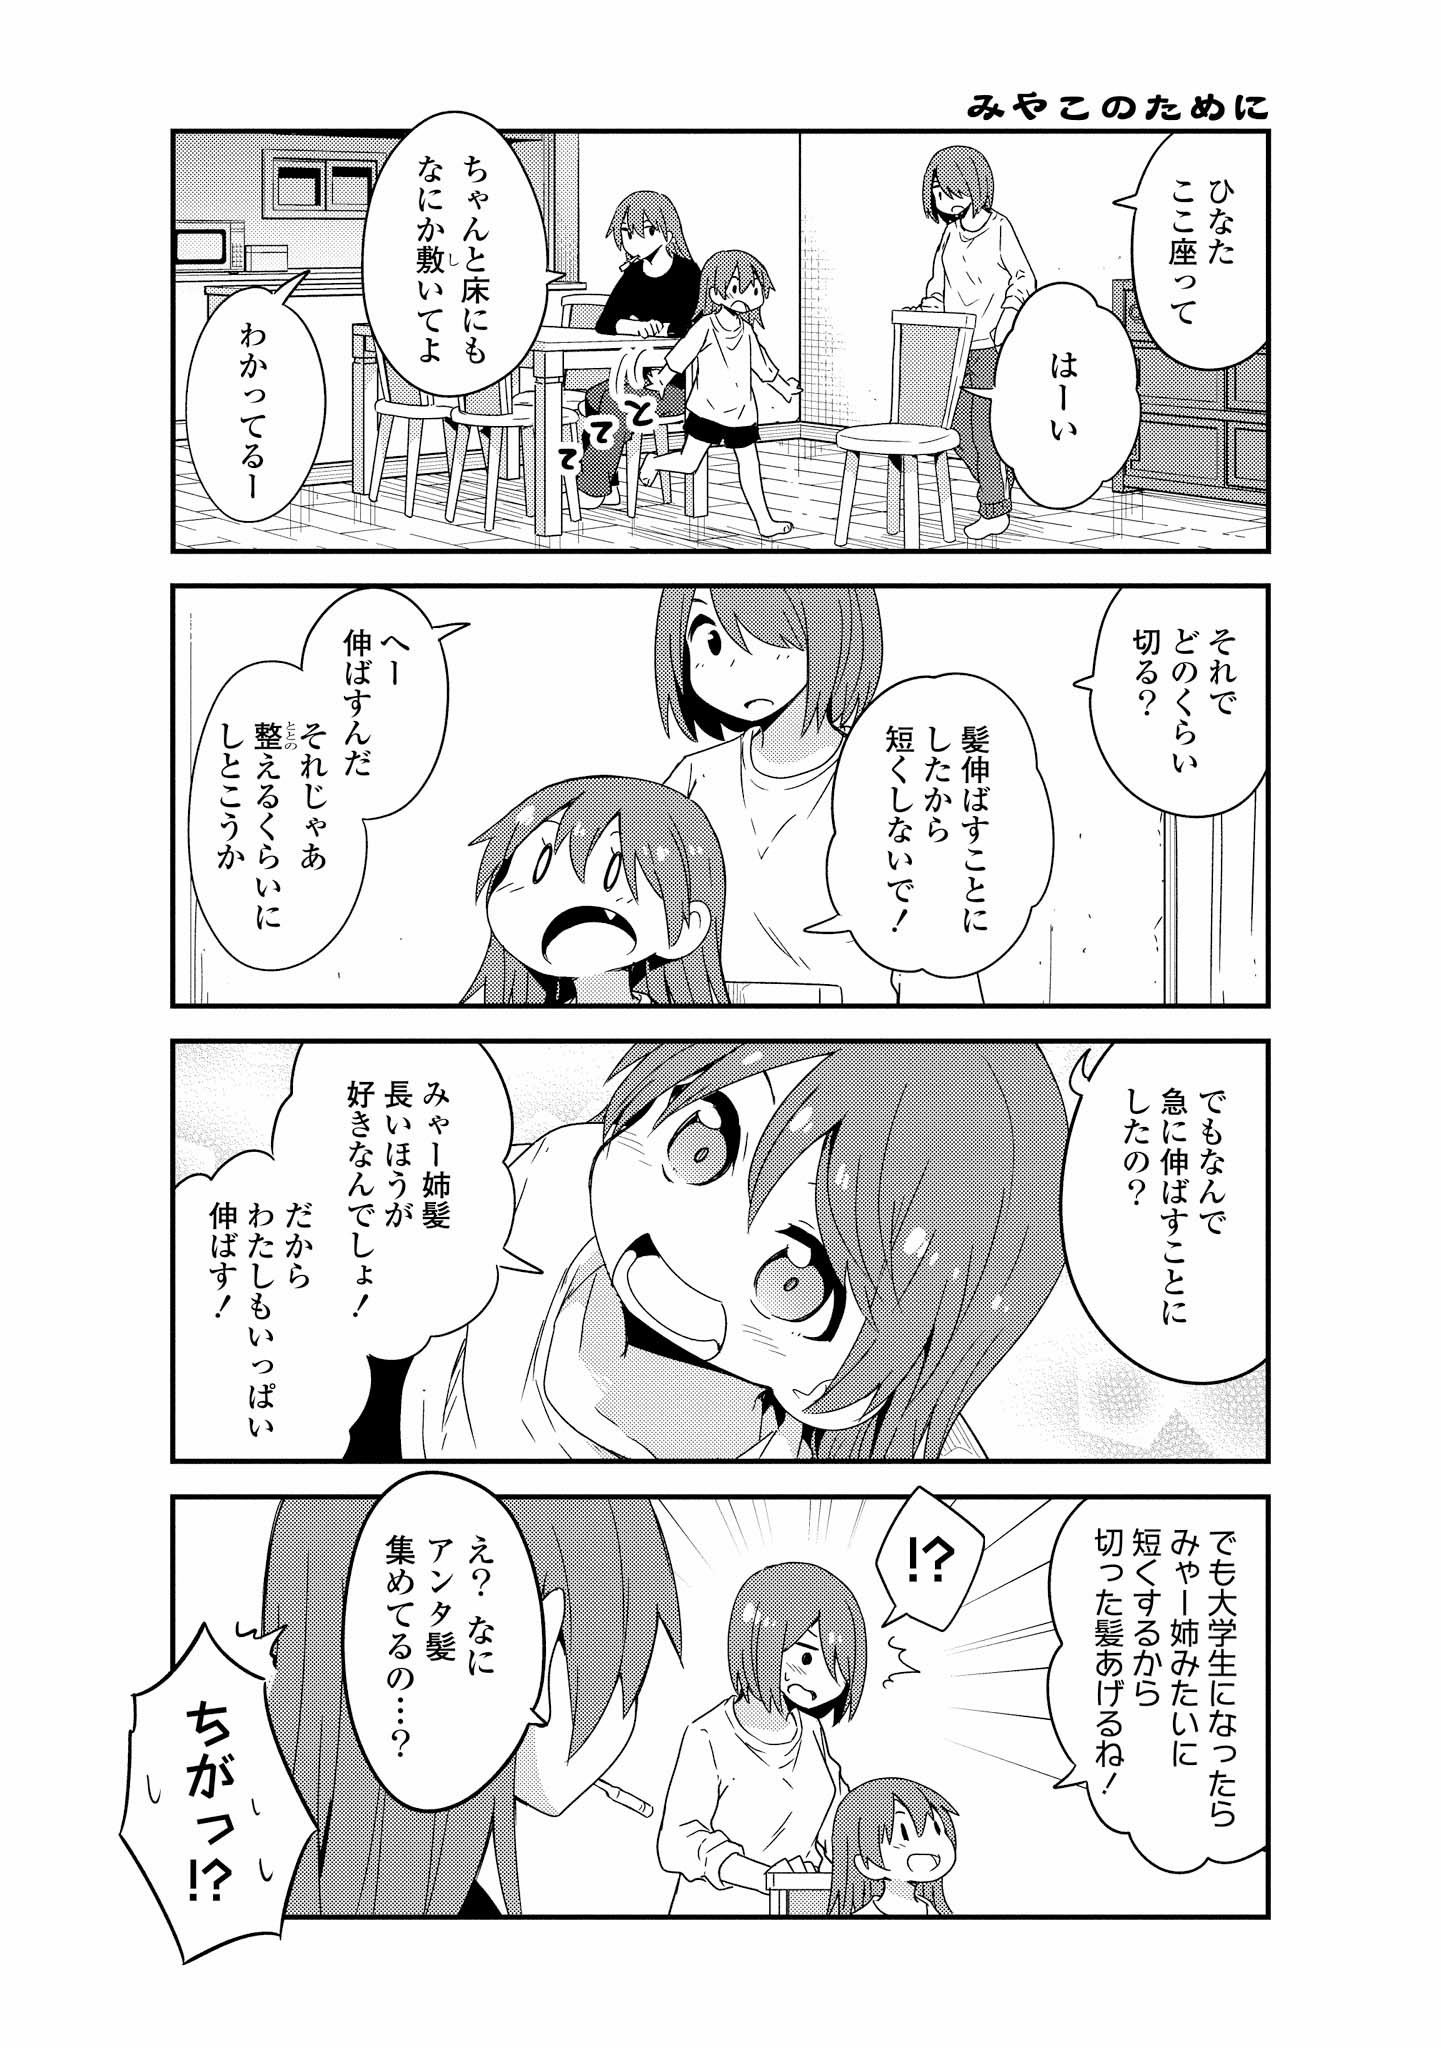 Watashi ni Tenshi ga Maiorita! - Chapter 41 - Page 13